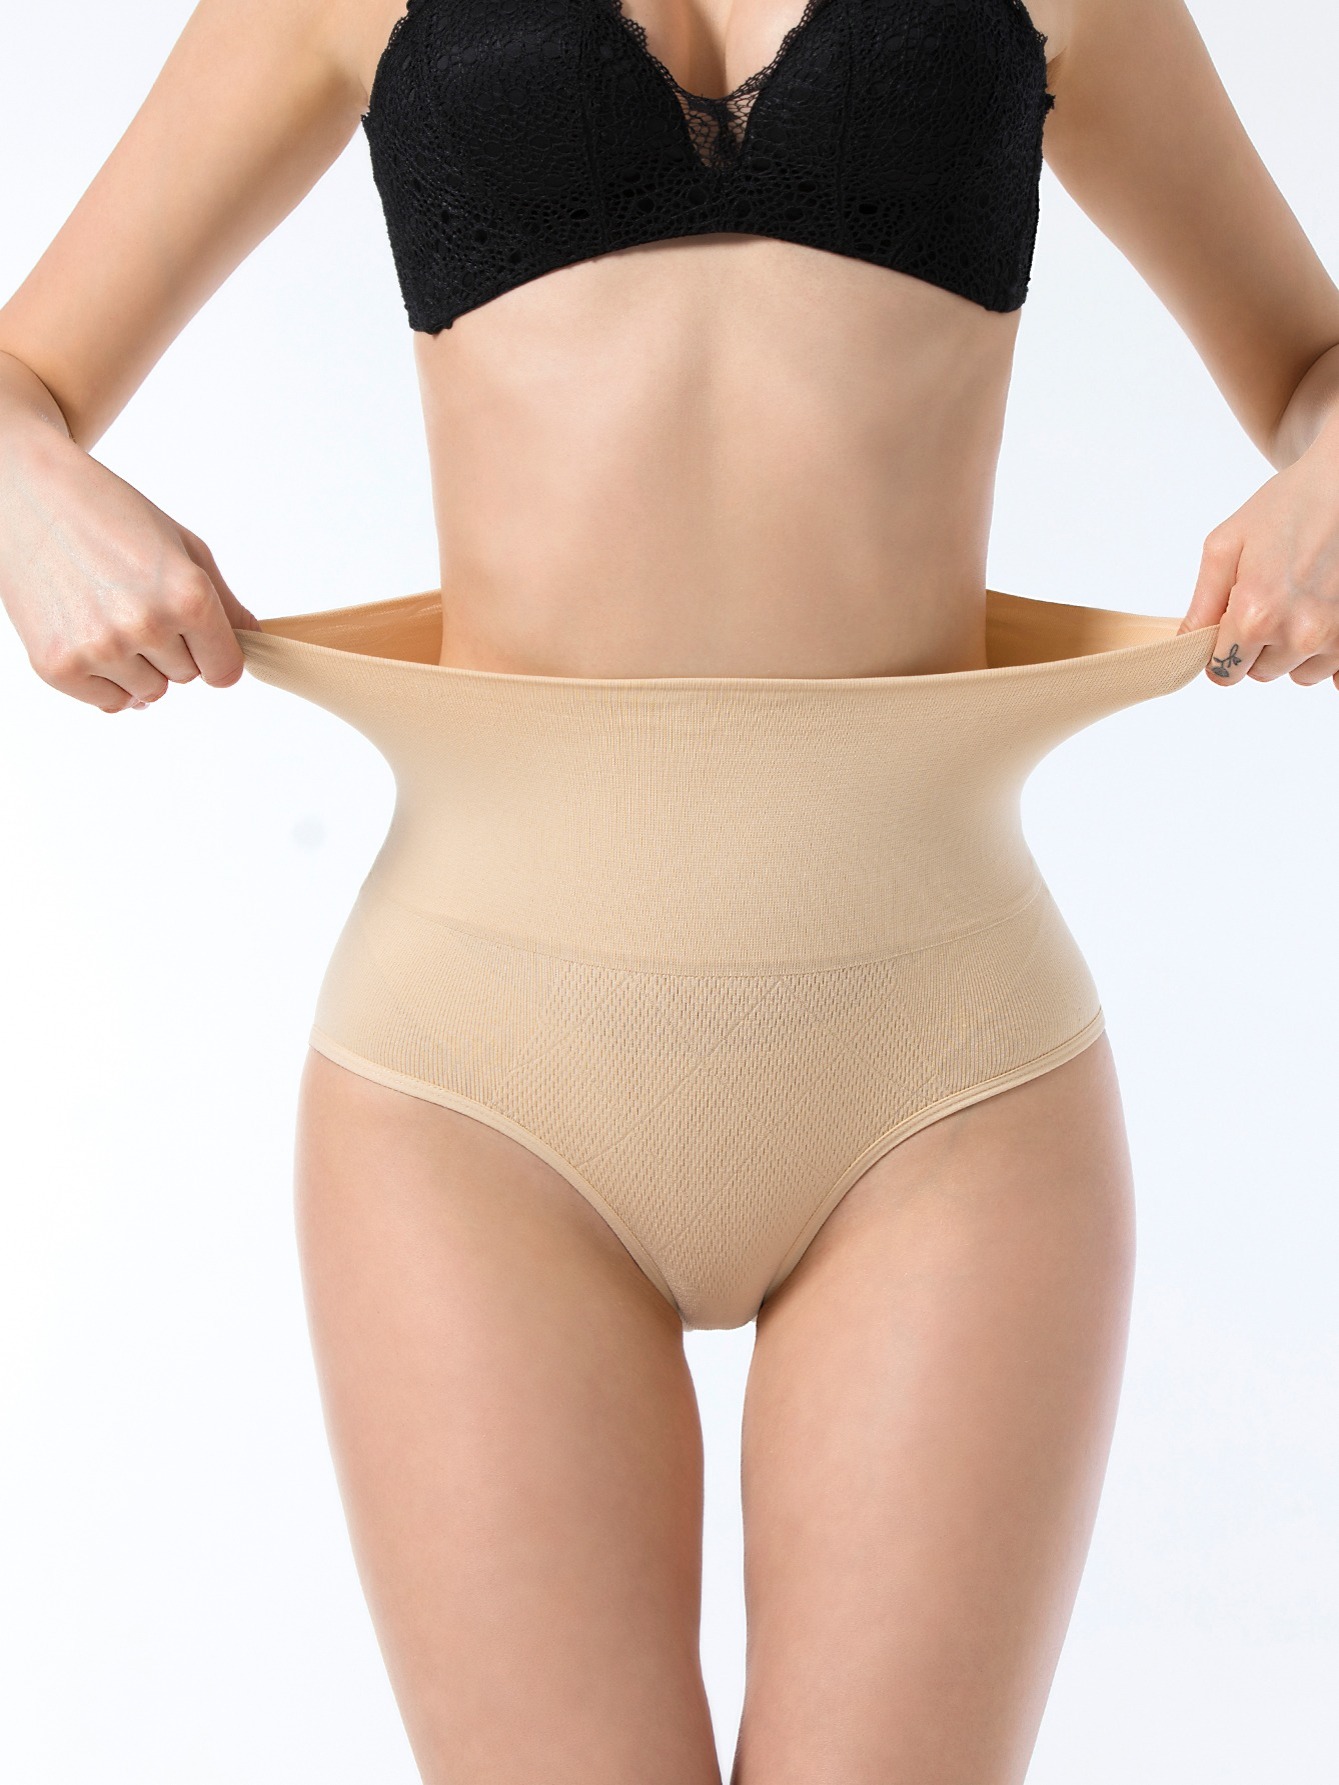 Butt Lifter Seamless Women High Waist Slimming Tummy Control